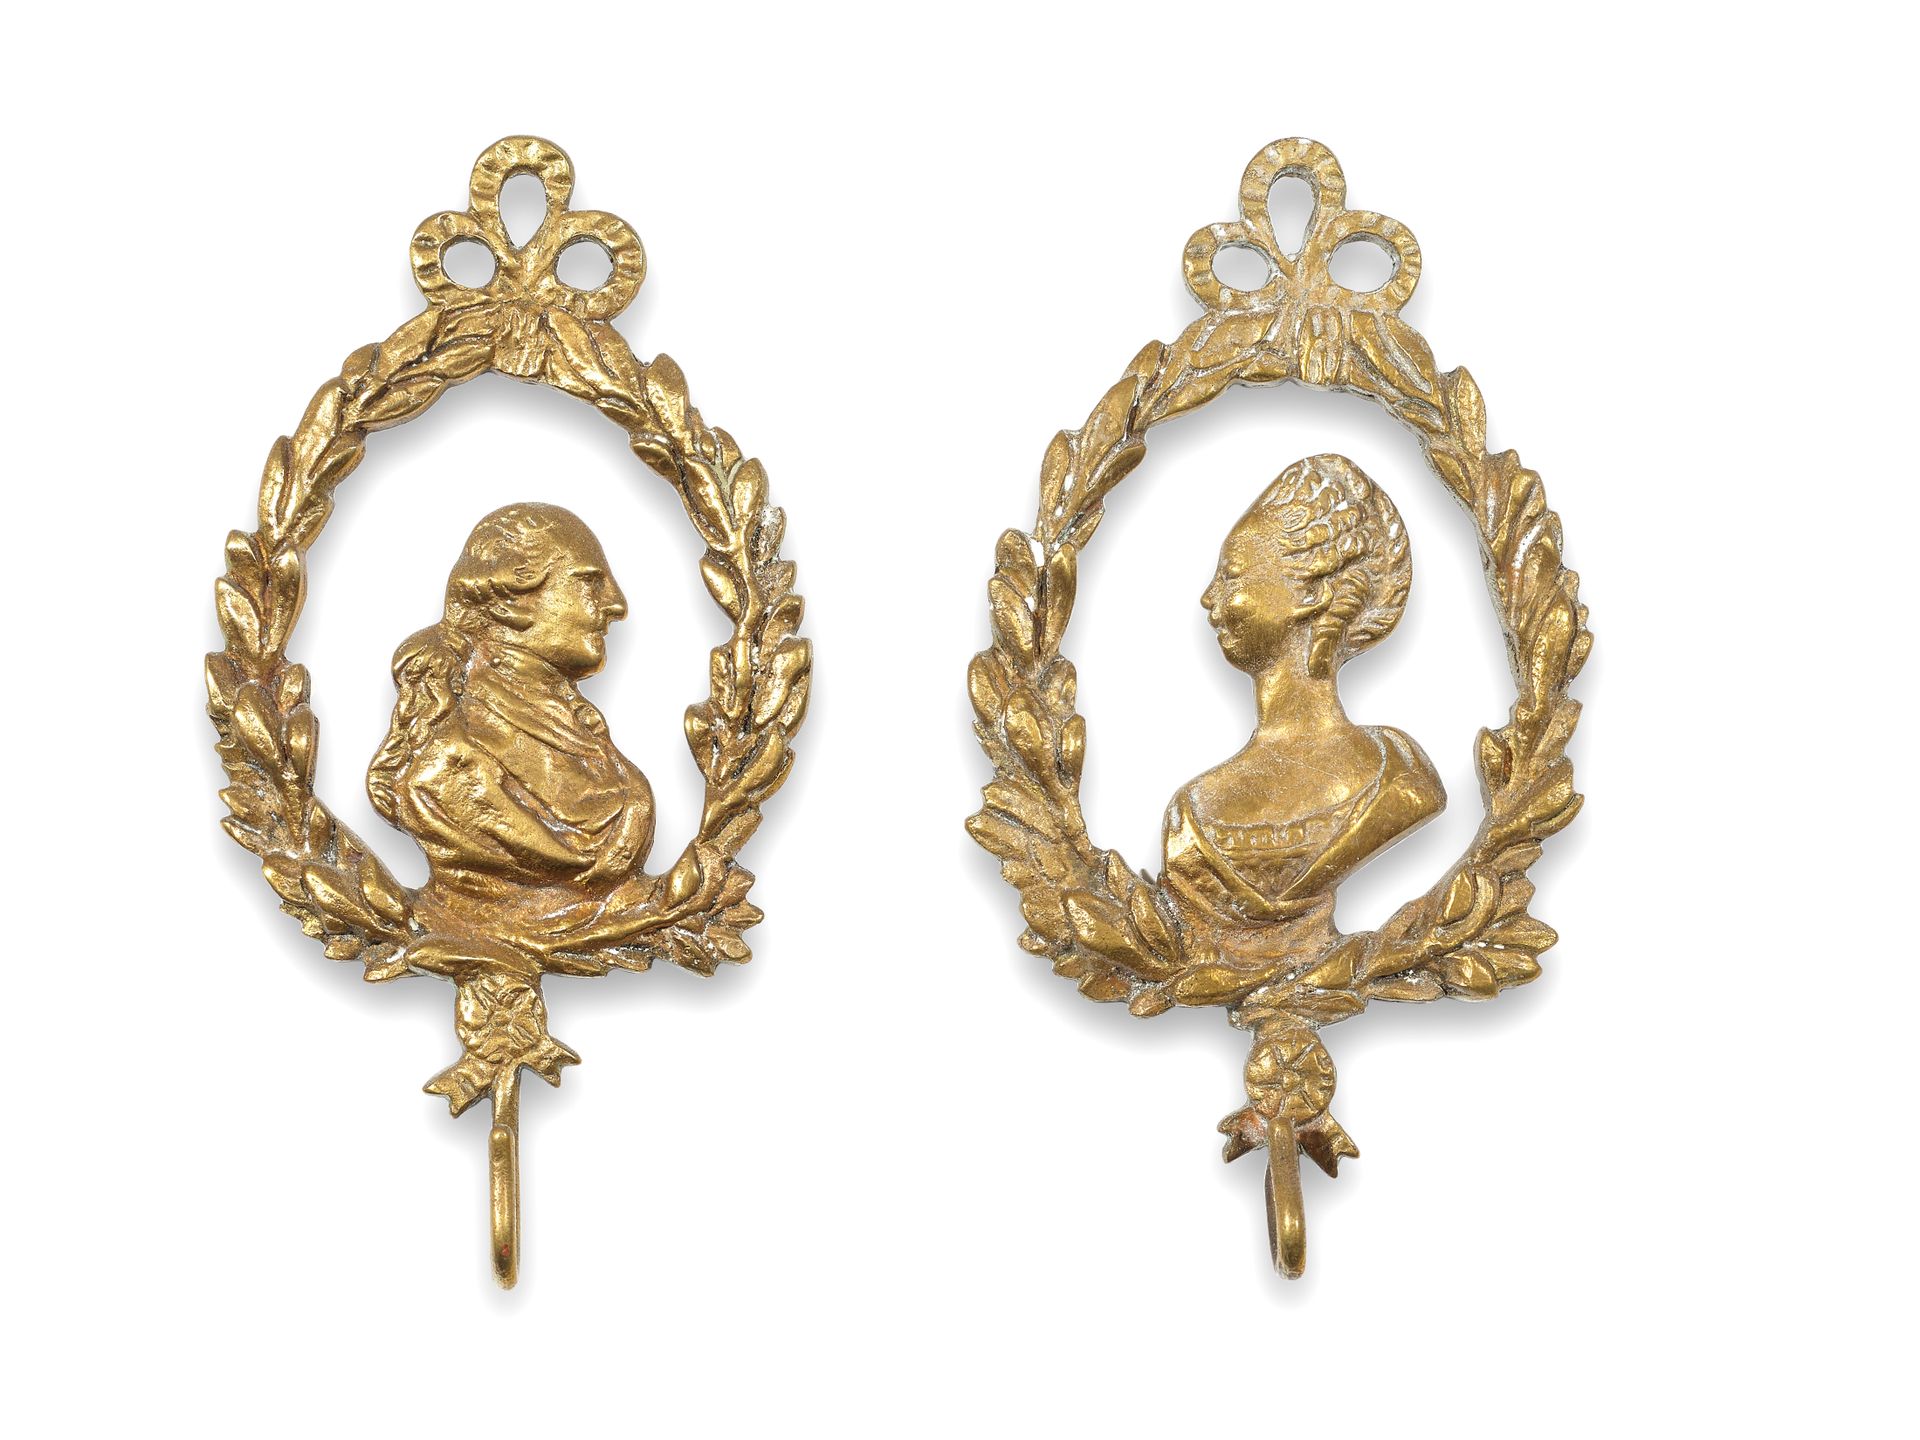 Null 一对表架
鎏金黄铜，带有路易十六和玛丽-安托瓦内特的轮廓图
18世纪末-19世纪初
H.11厘米